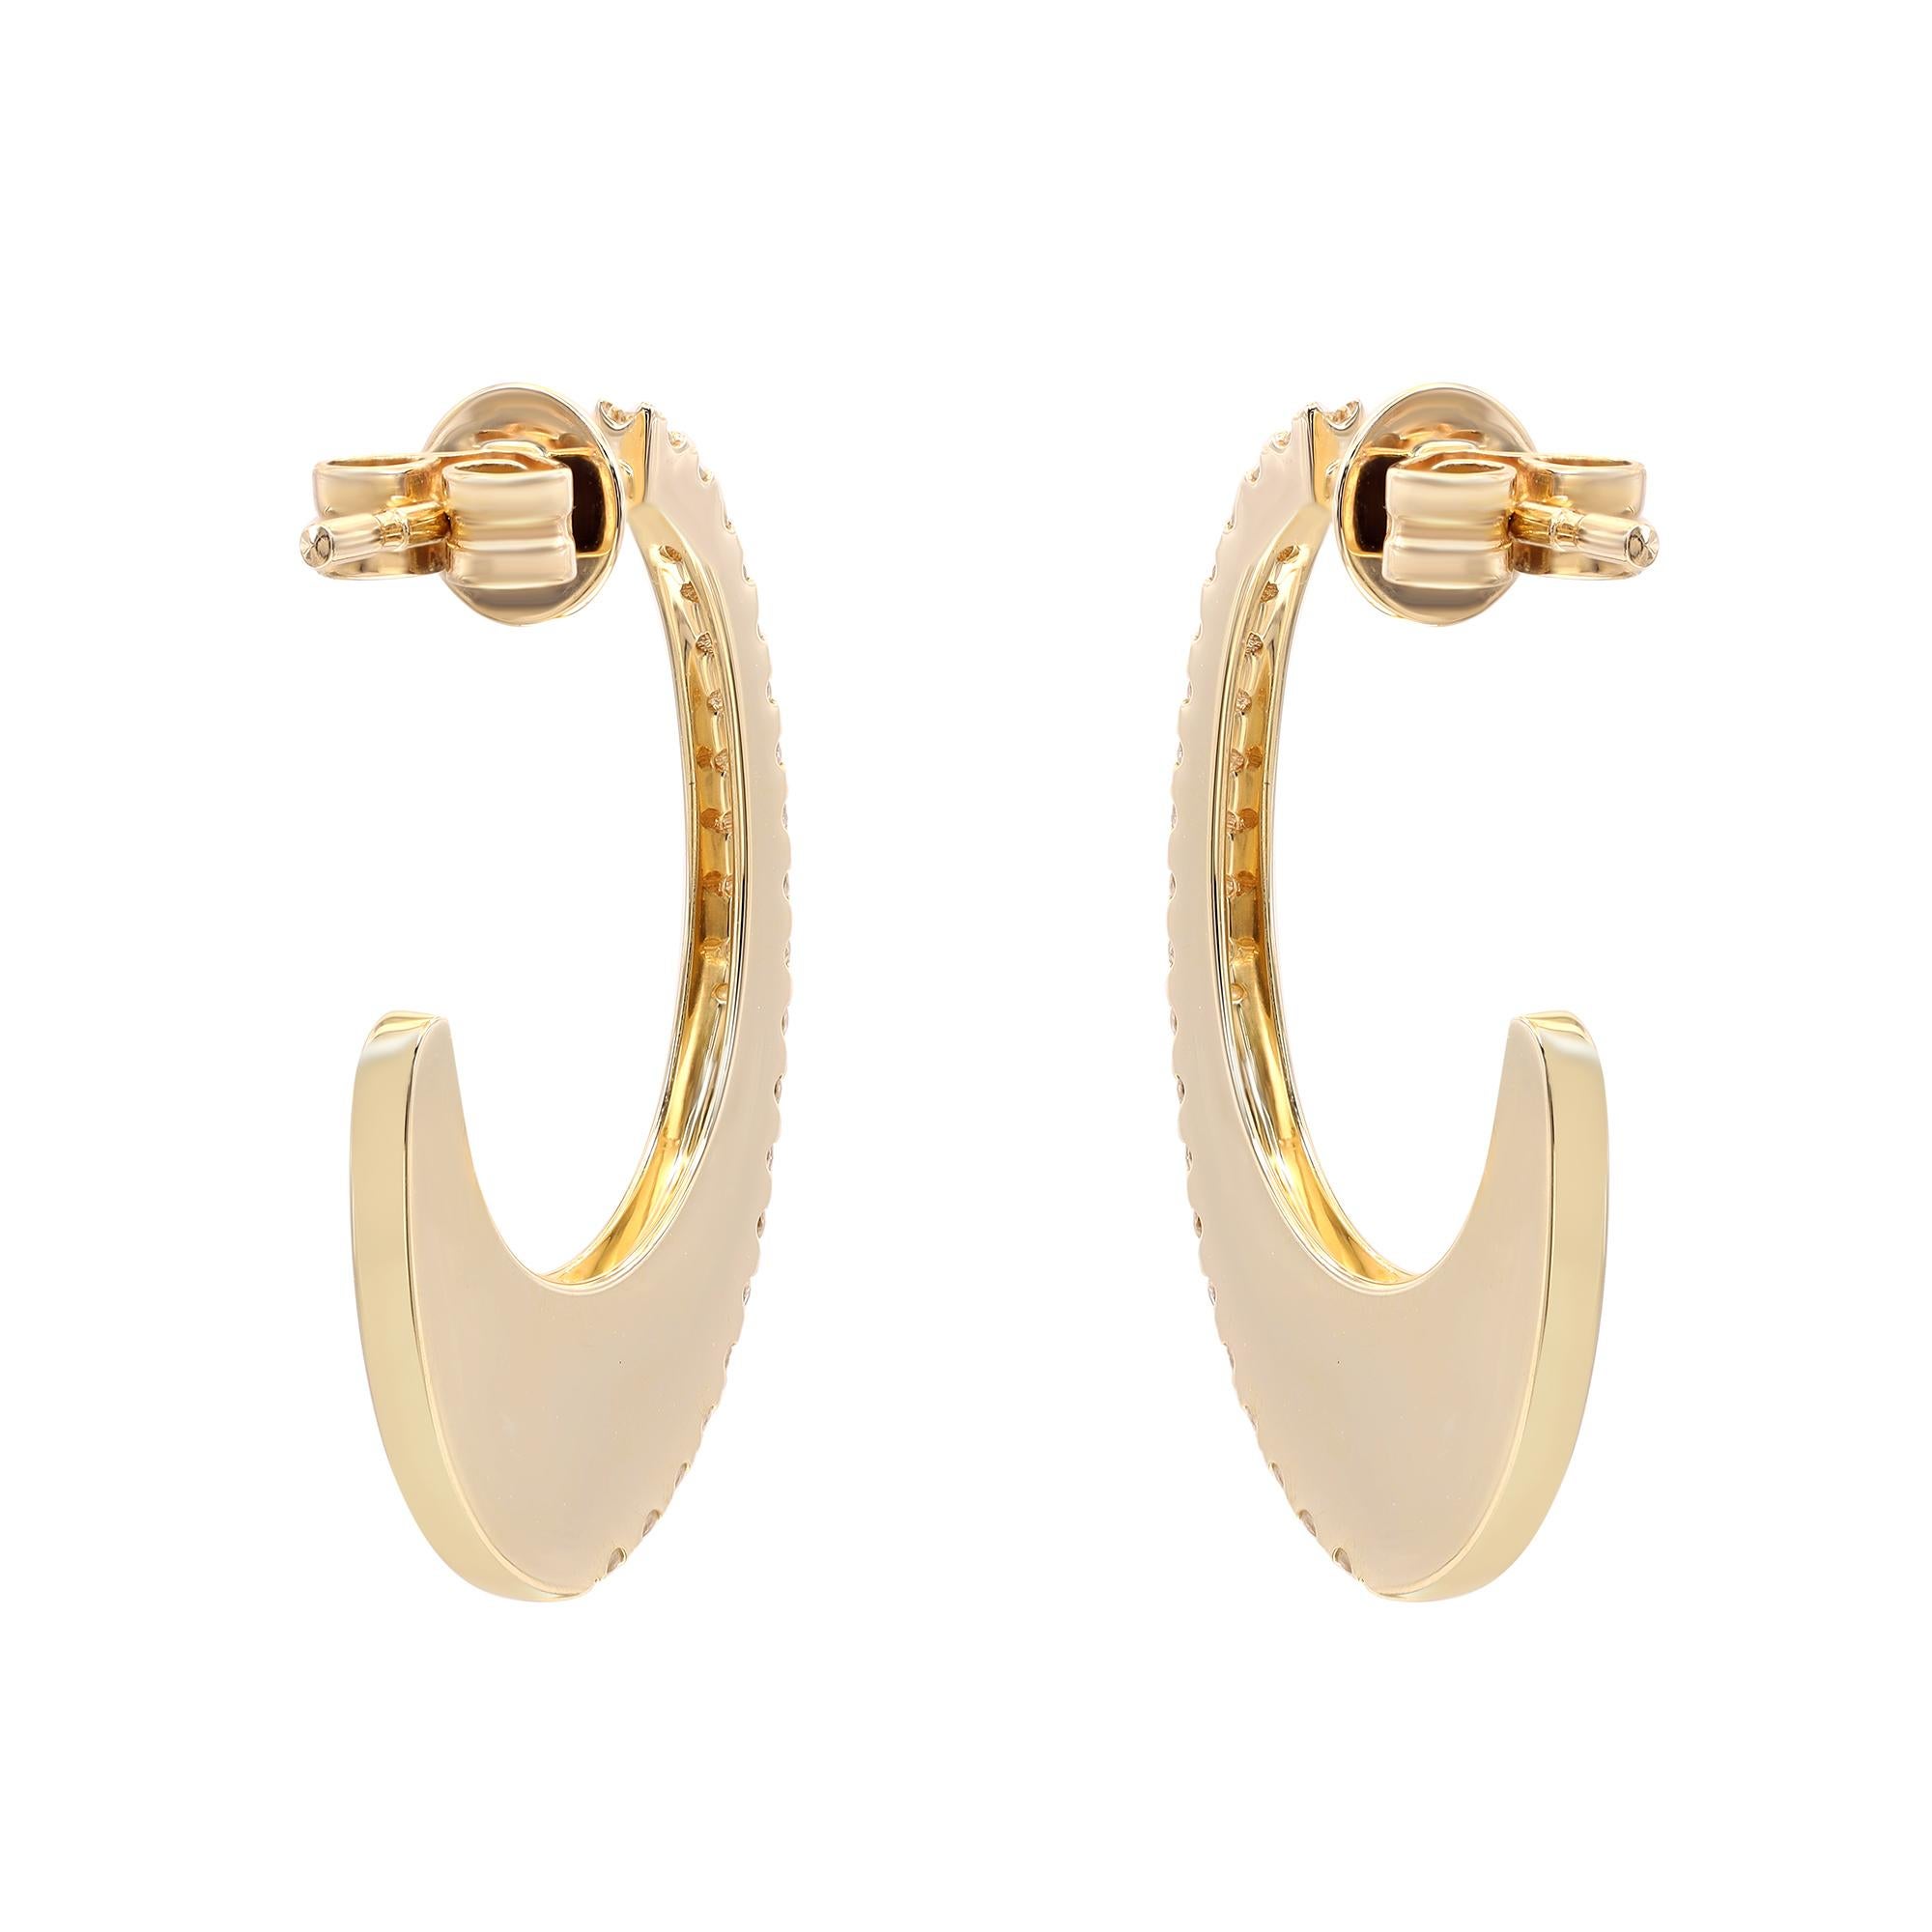 Modern Rachel Koen Pave Diamond Oval Hoop Earrings 14K Yellow Gold 0.34Cttw For Sale